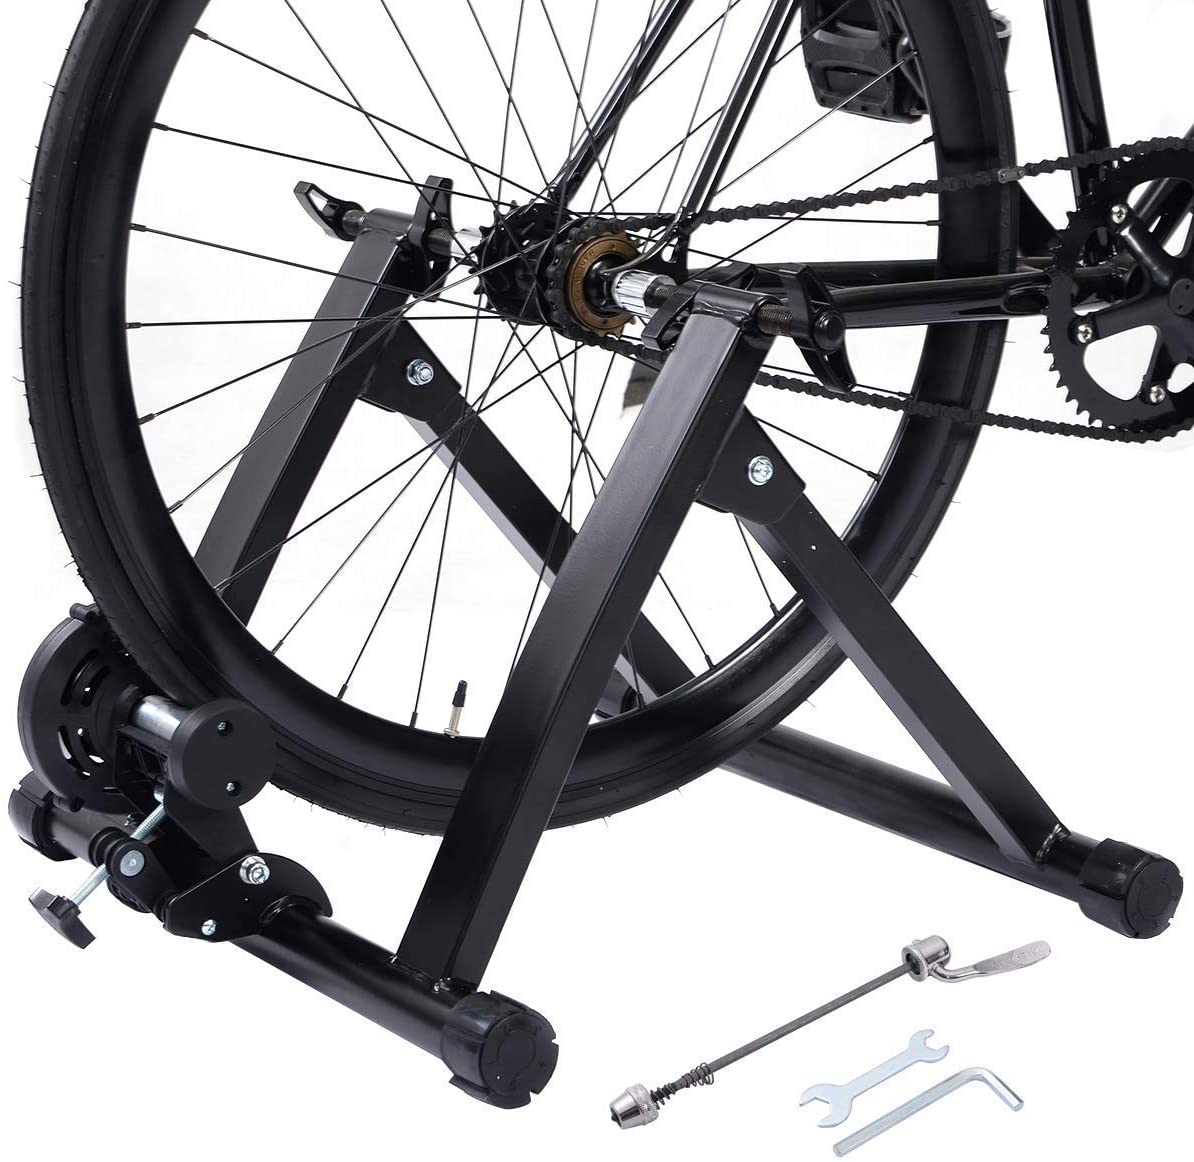  COSTWAY Bicicleta Estática Soporte Rodillo de Ciclismo Entrenamiento Plegable Carga Máxima hasta 150 kg Color Negro 